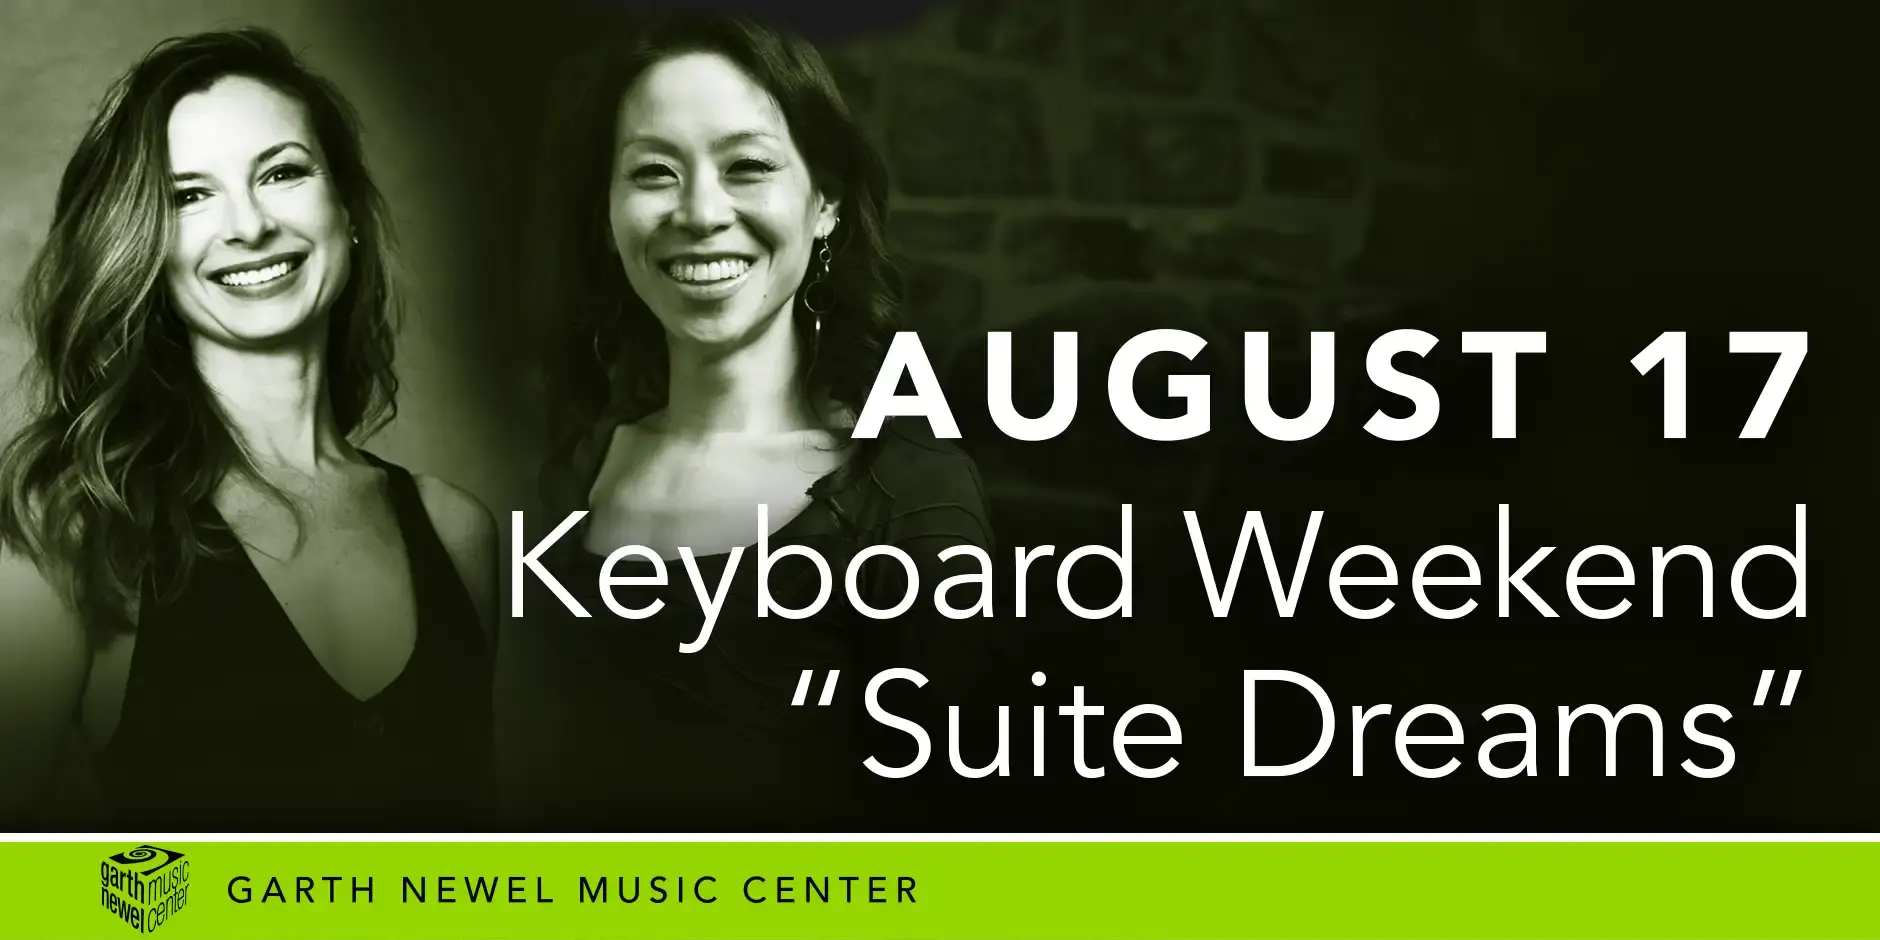 August 17 - Keyboard Weekend "Suite Dreams"